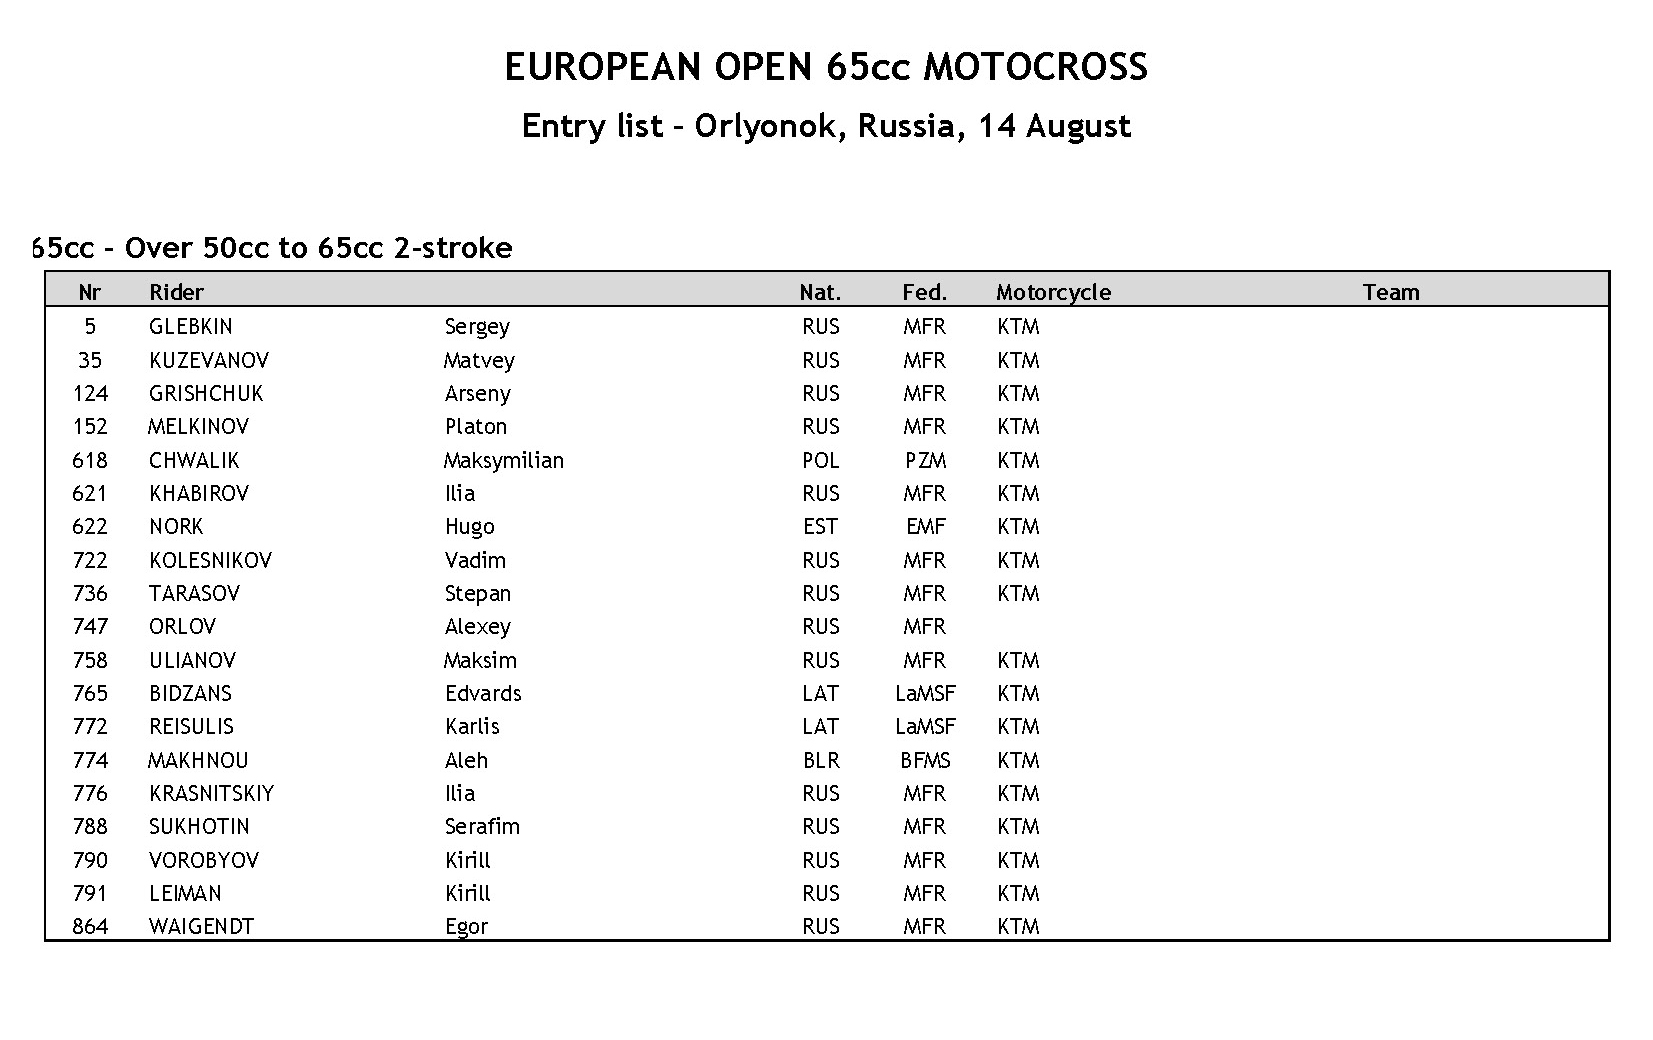 2016 Entry list for PR FIM EUROPE 65CC